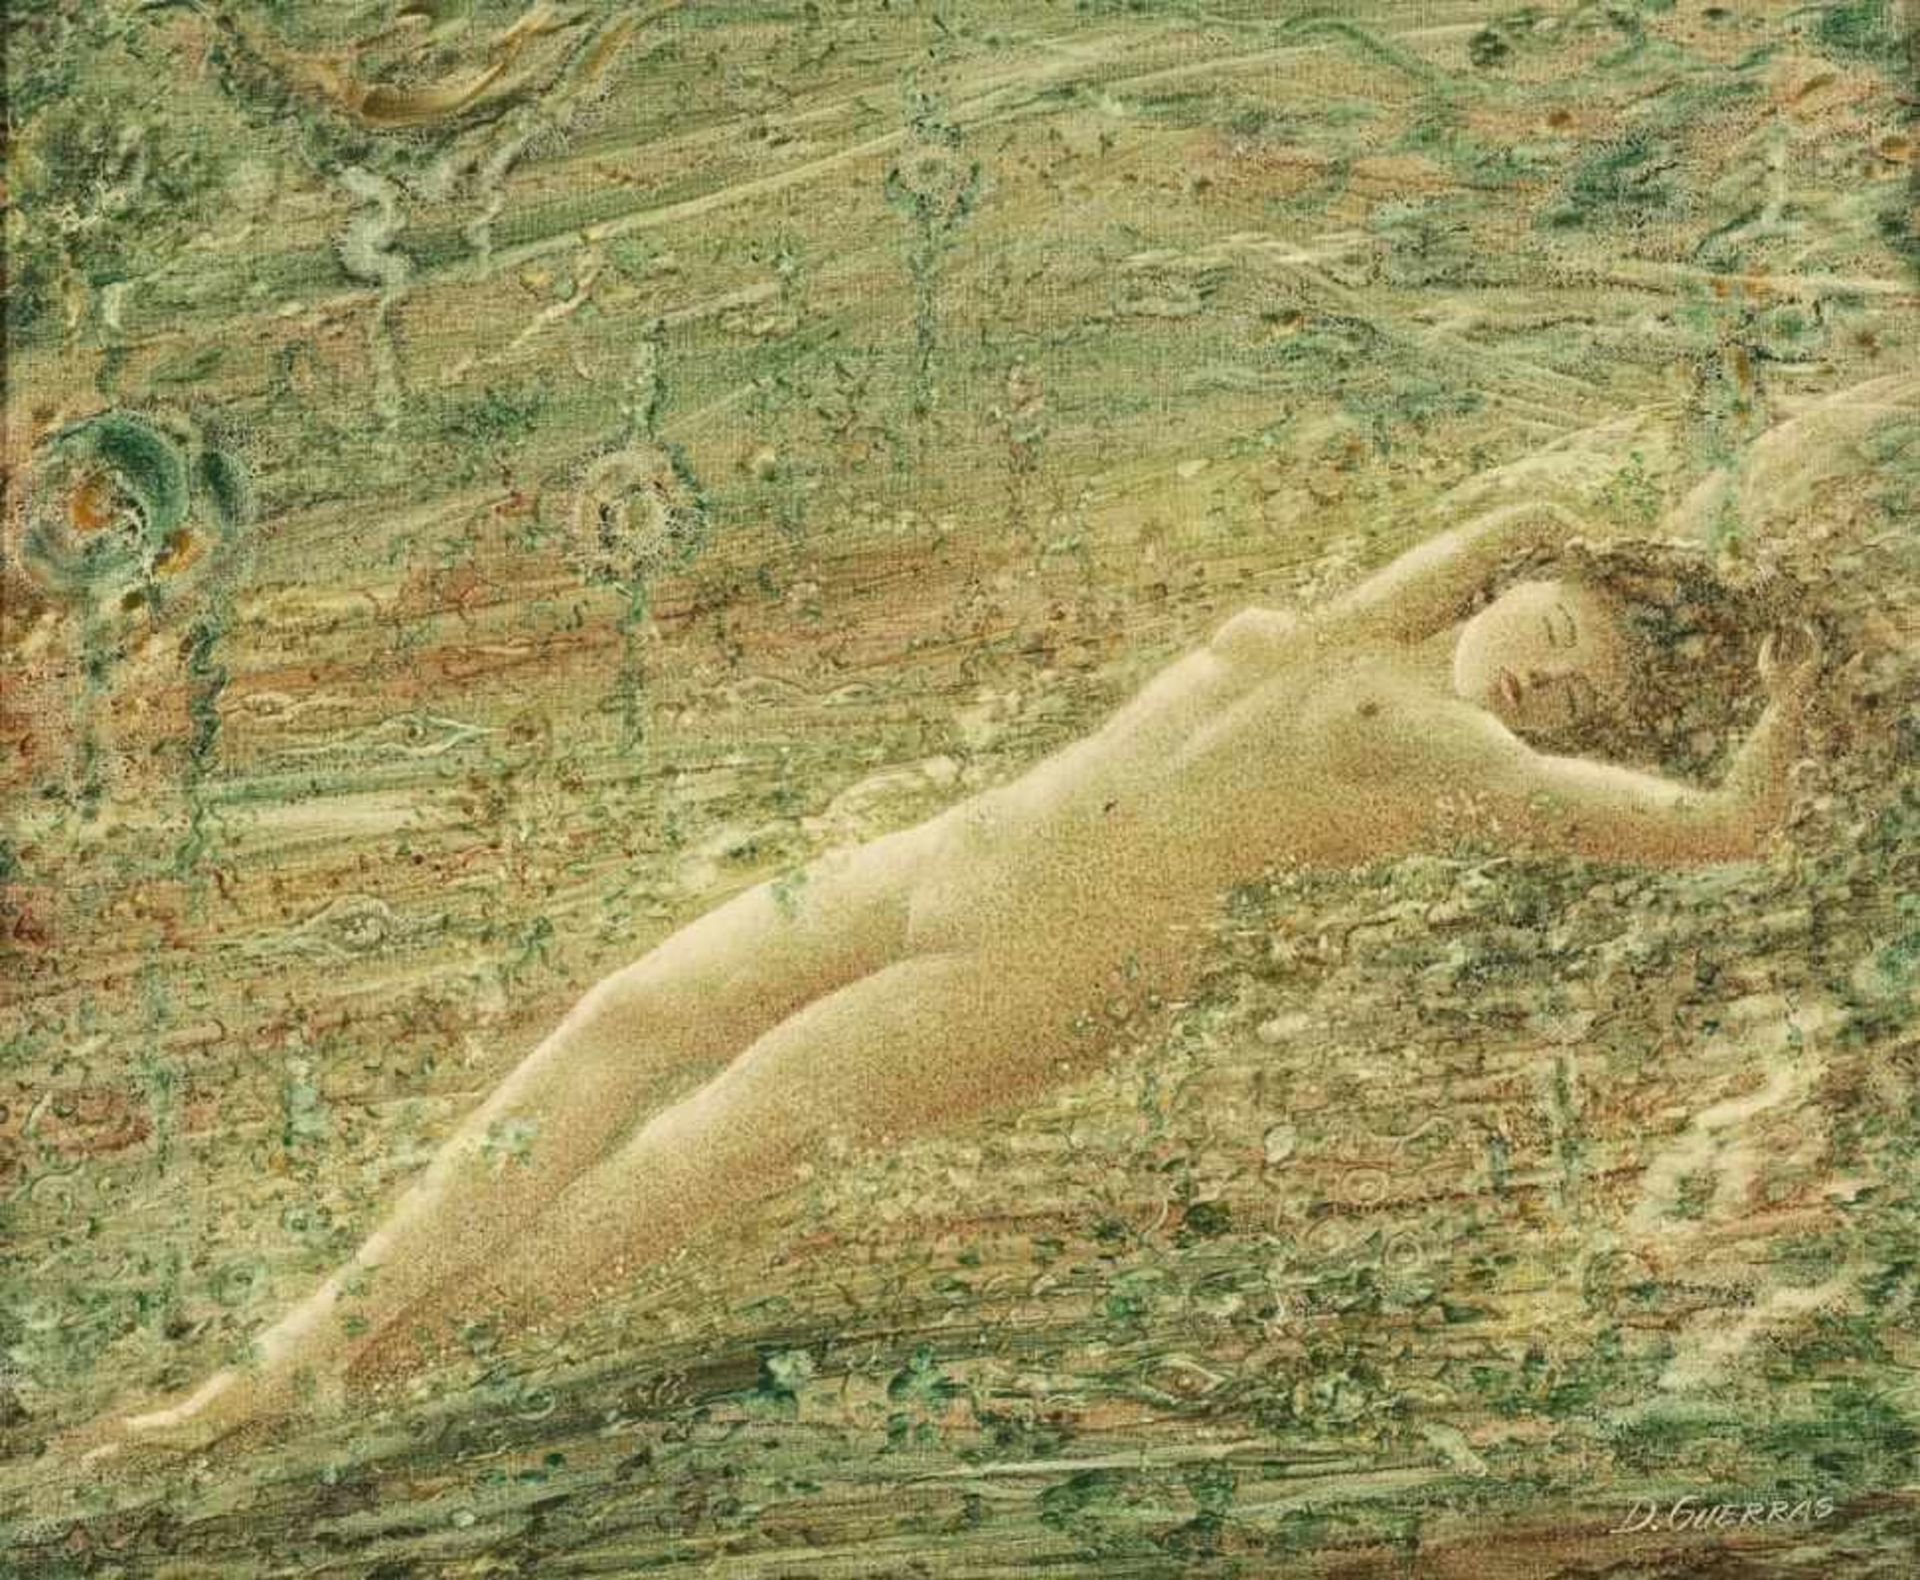 D. Guerras Künstler des 20. Jahrhunderts - Träumende (liegender weiblicher Akt) - Öl/Lwd. 50 x 60